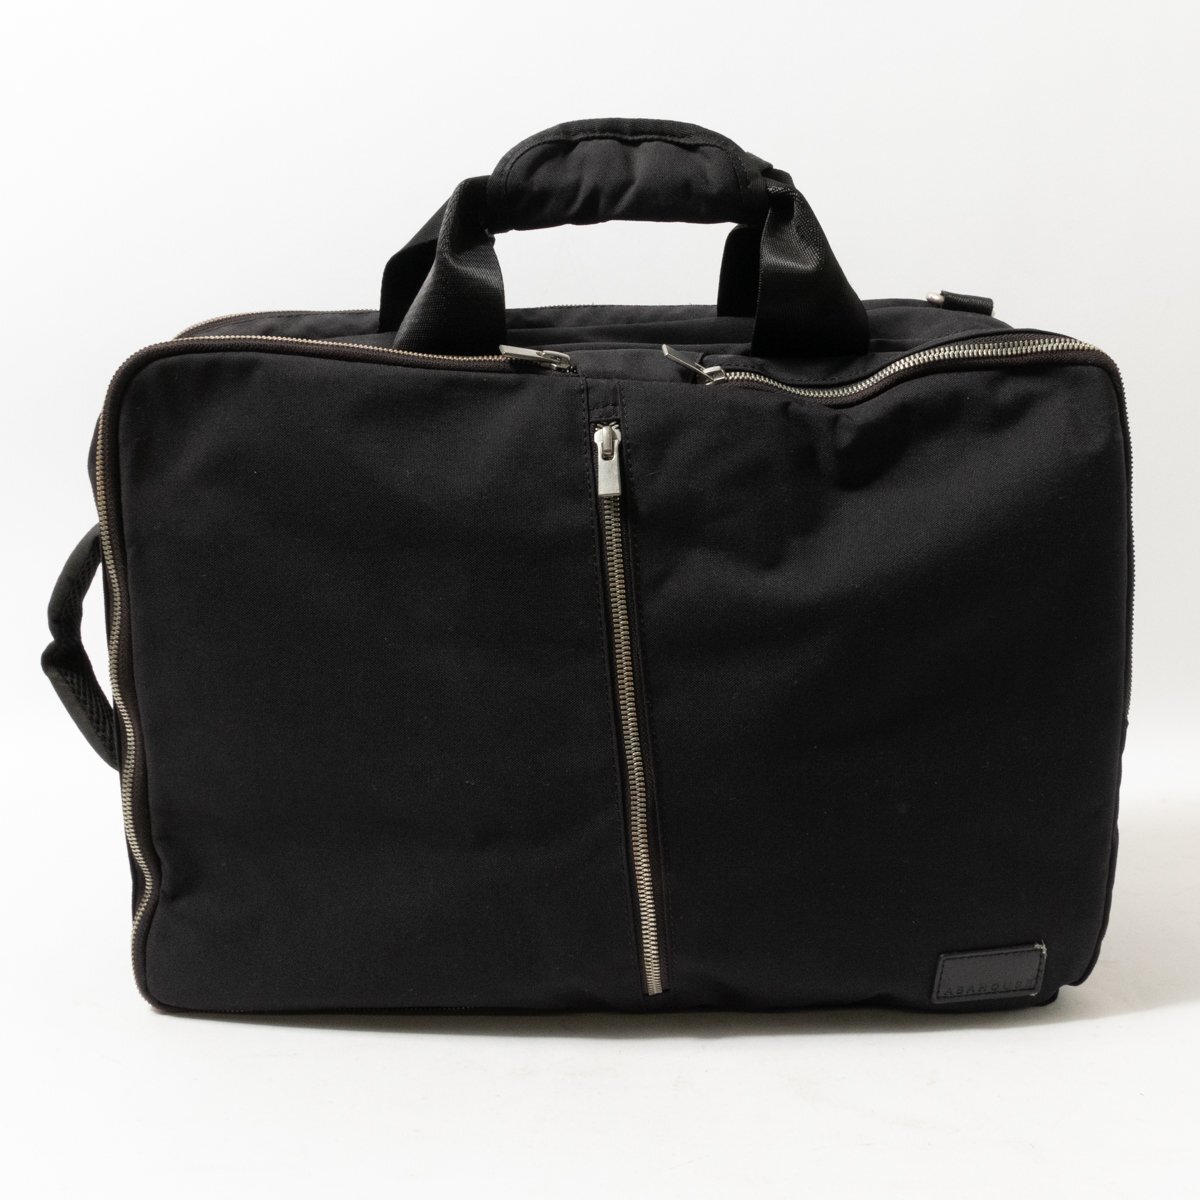 ABAHOUSE Abahouse 2way портфель сумка черный чёрный бизнес ходить на работу работа место хранения большое количество рюкзак ручная сумка мужской джентльмен мужчина 